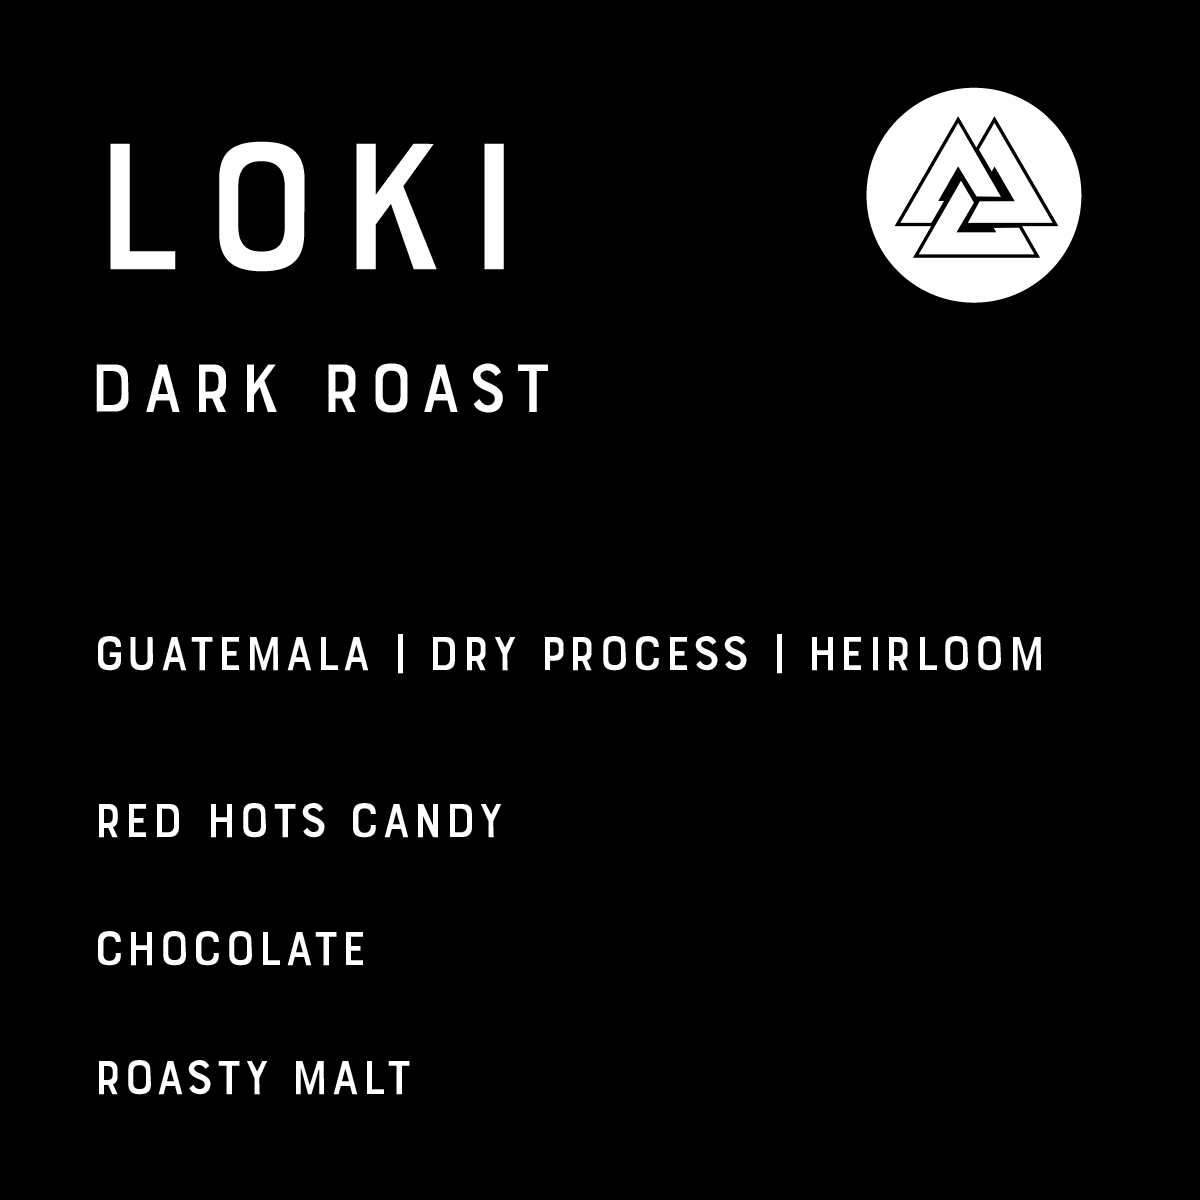 Loki - Dark Roast